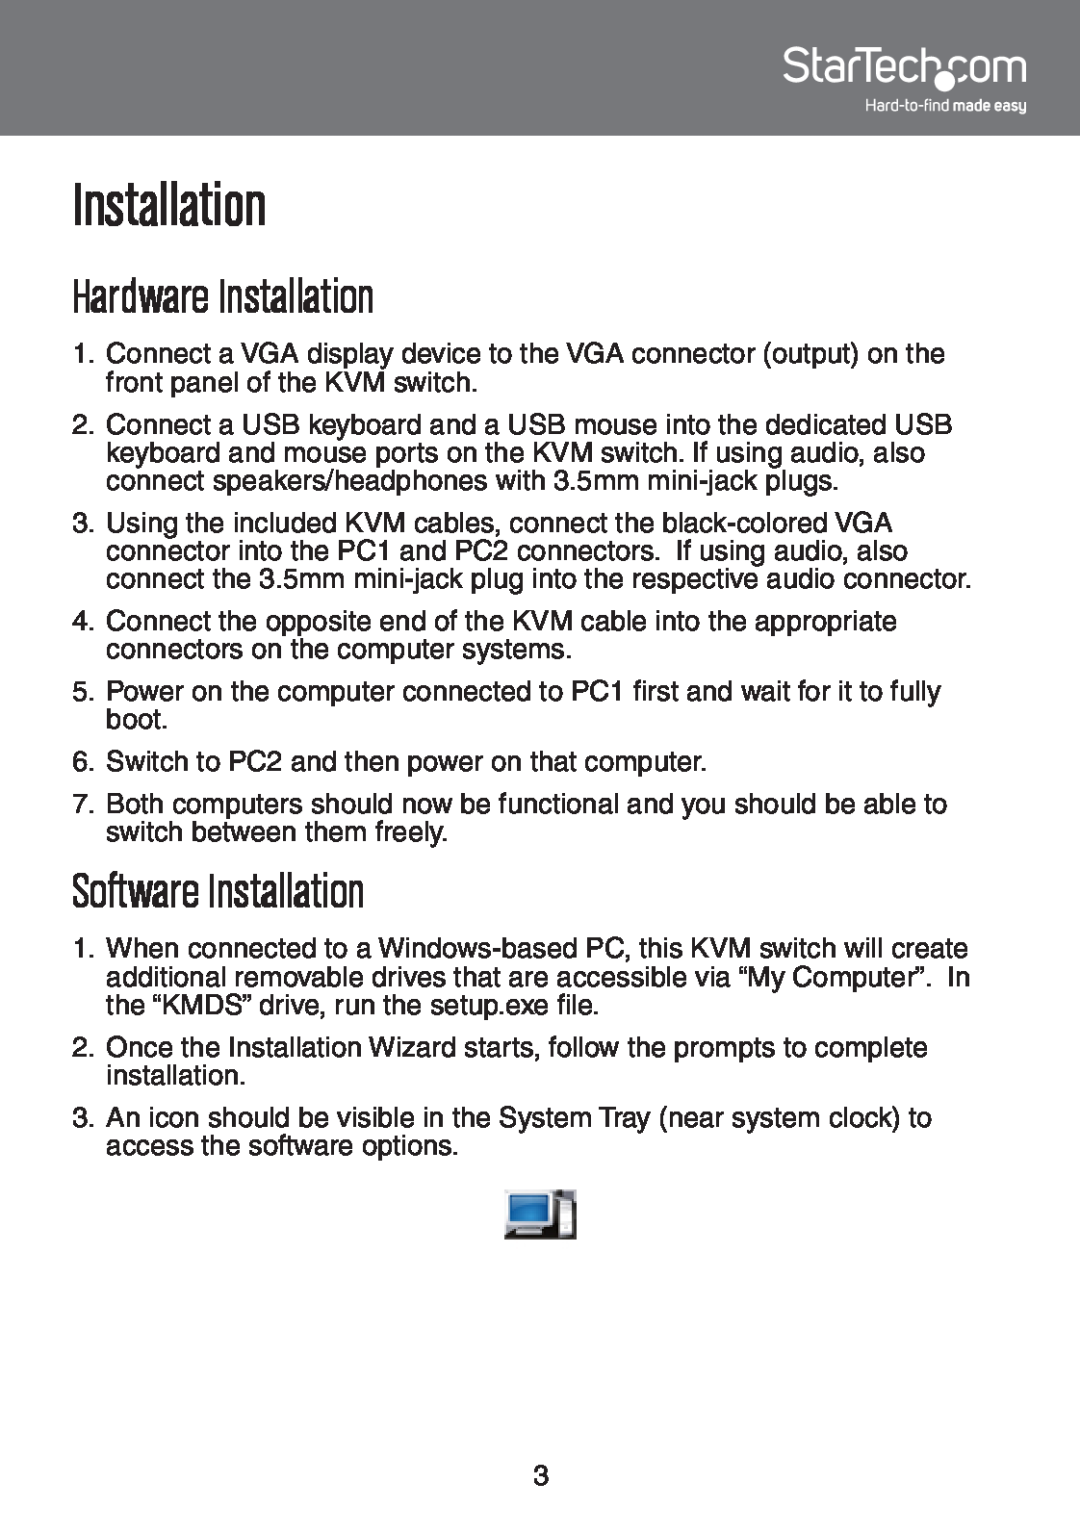 StarTech.com SV231UAF instruction manual Hardware Installation, Software Installation 